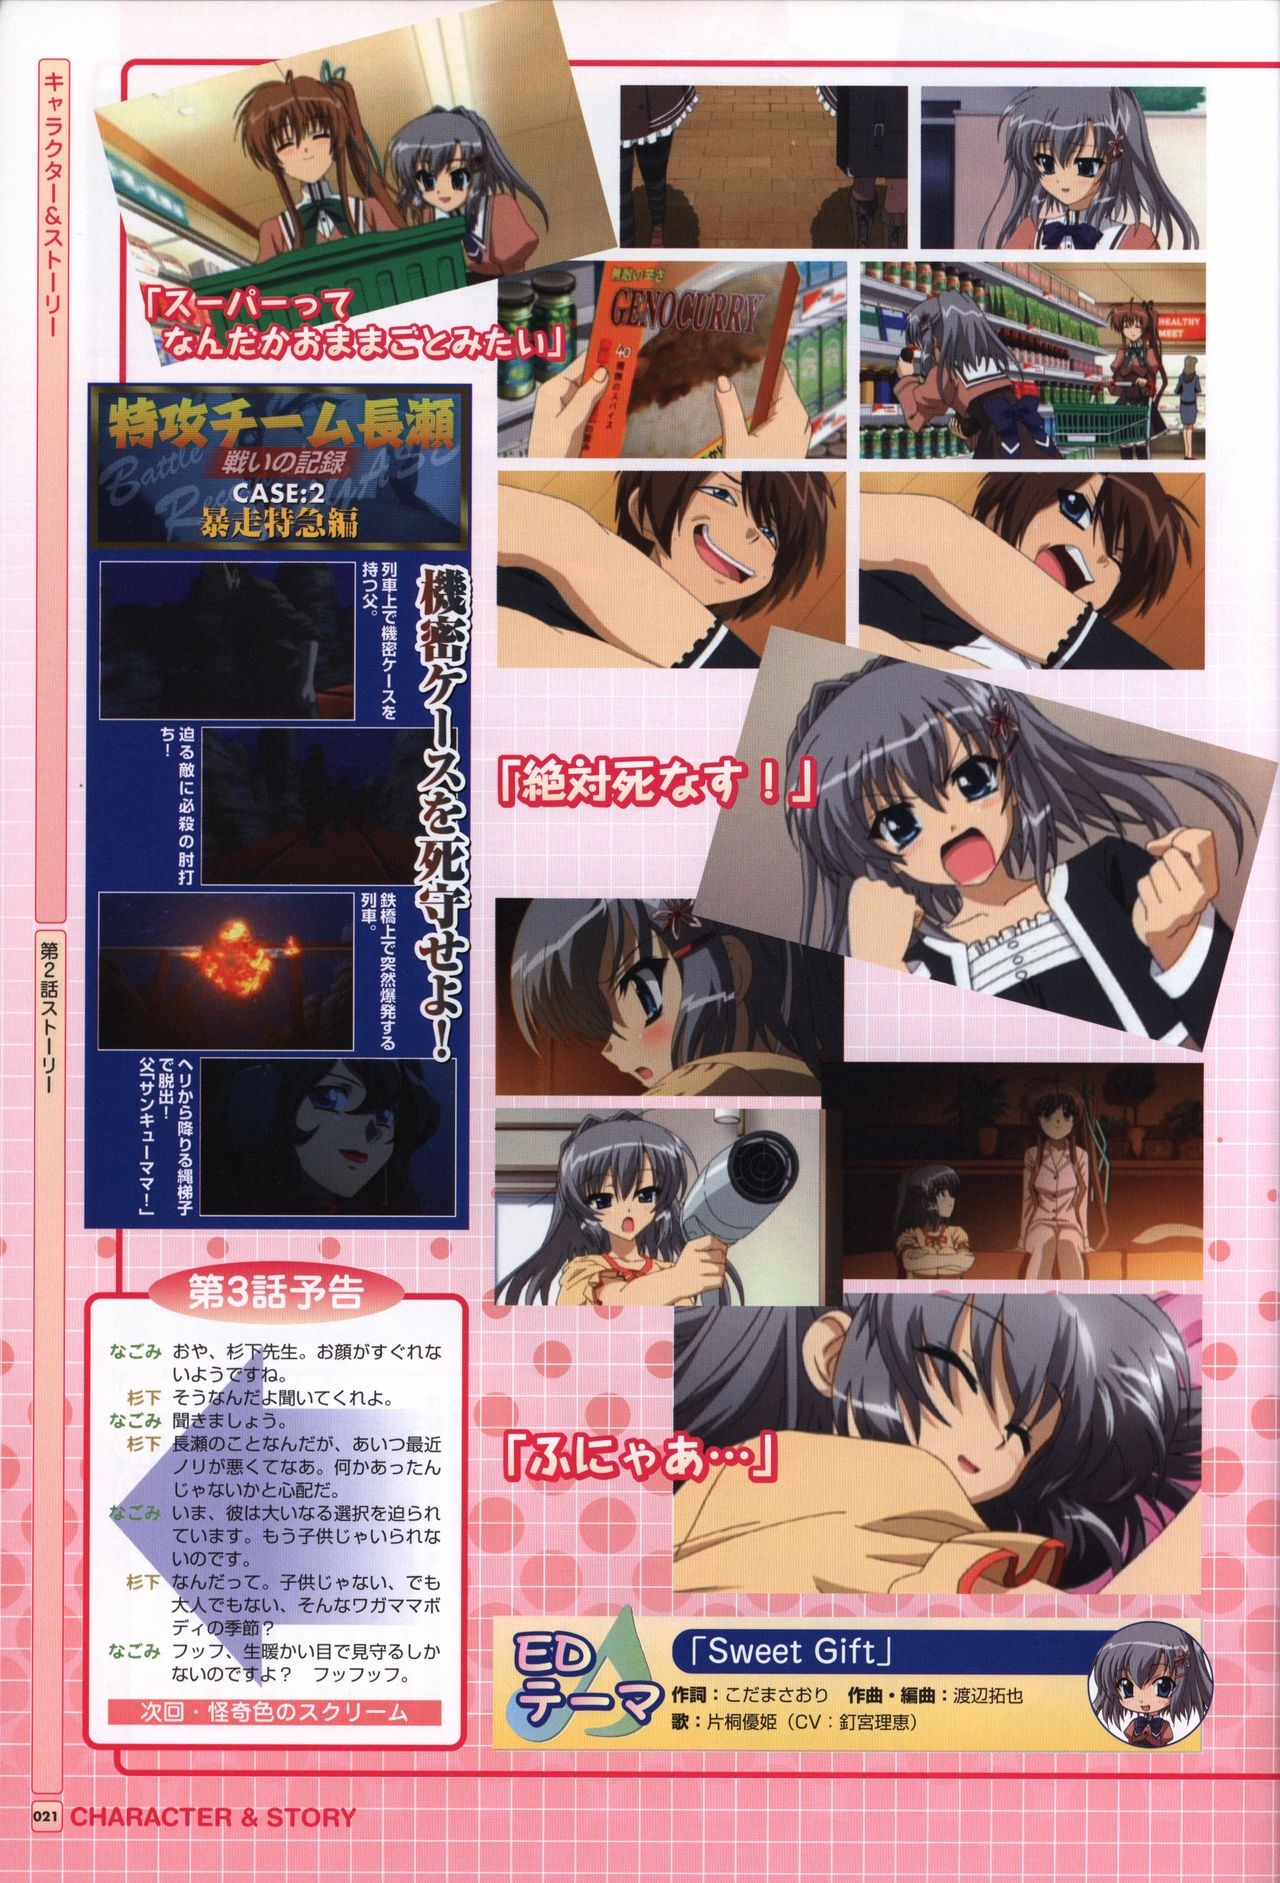 TV ANIME Akaneiro ni Somaru Saka Visual Guide Book 21